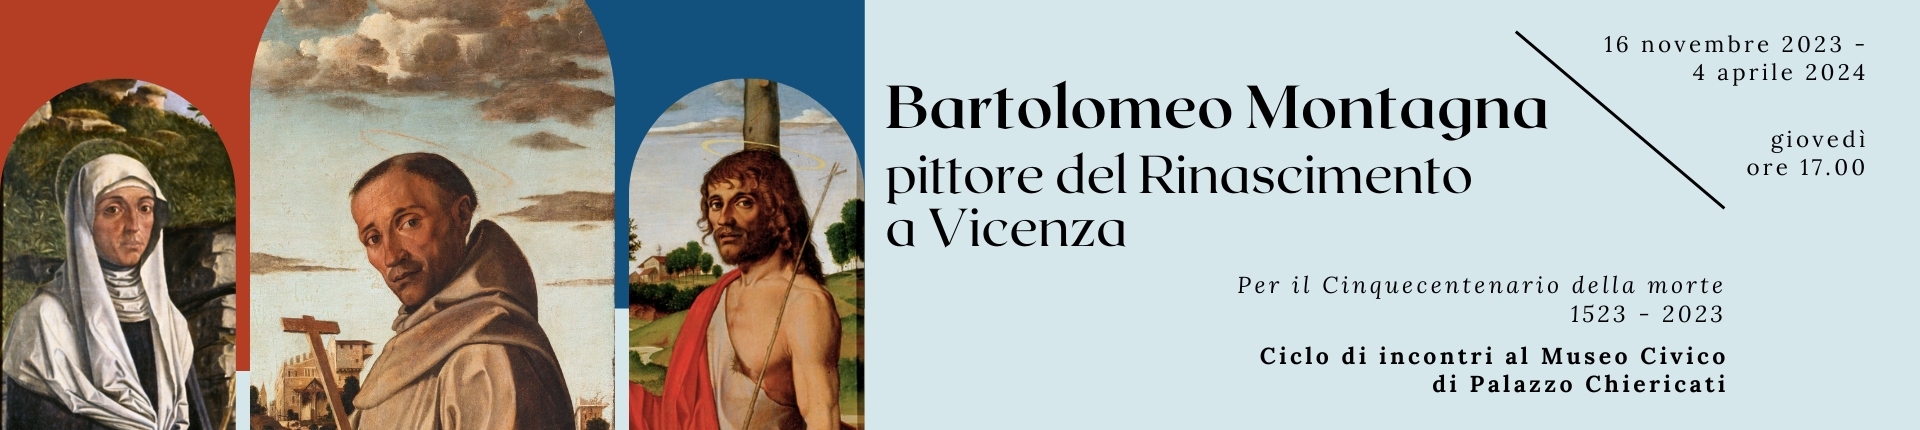 Bartolomeo Montagna pittore del Rinascimento a Vicenza